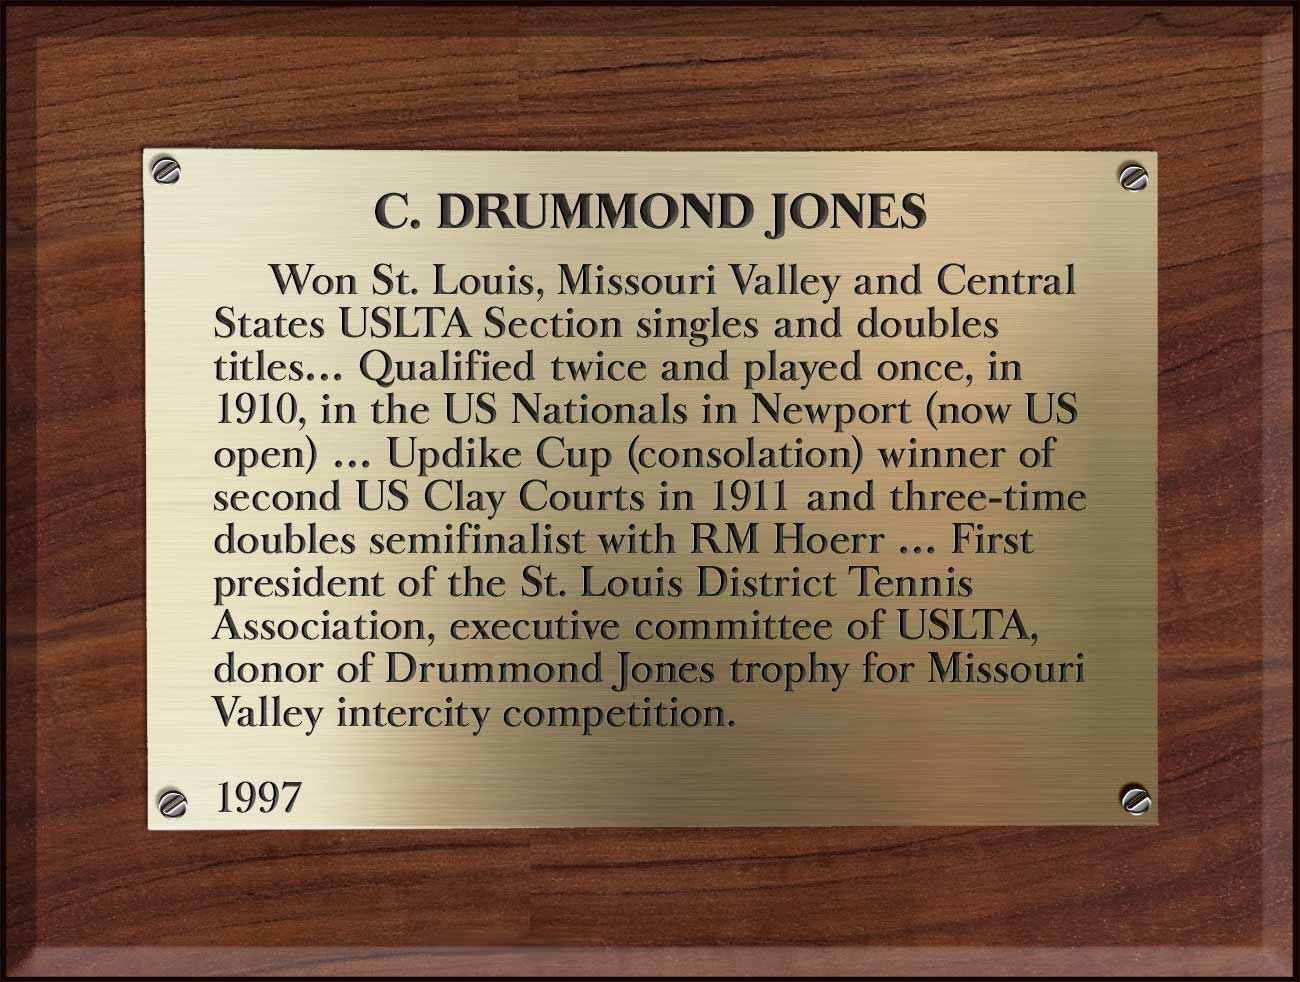 C. Drummond Jones